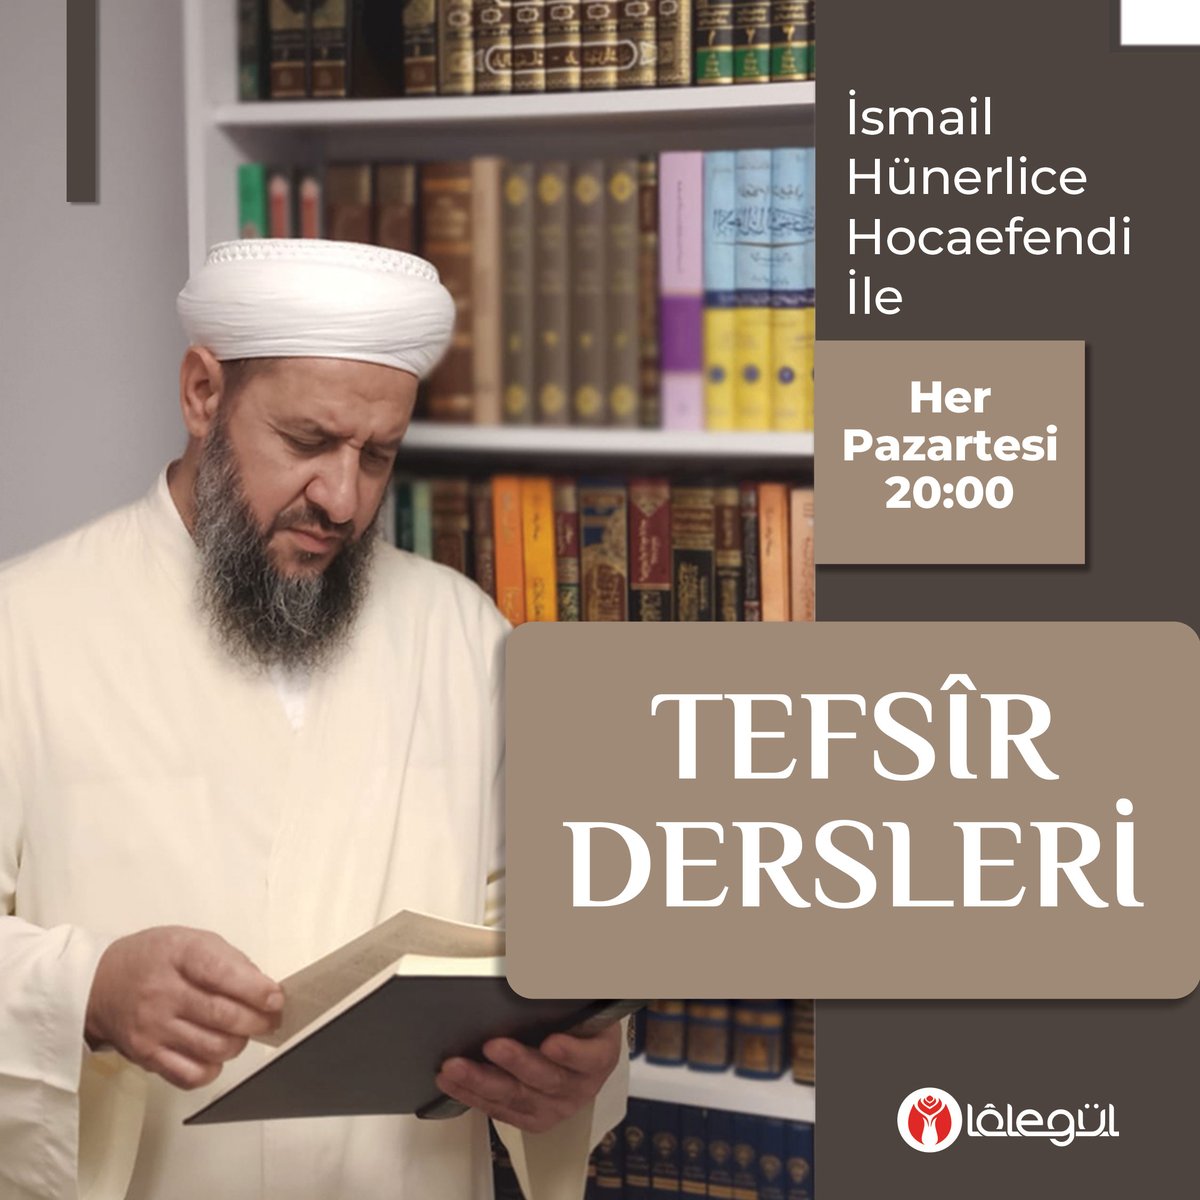 İsmail Hünerlice Hocaefendi ile Tefsîr Dersleri bu akşam saat 20:00'de Lâlegül TV'de sizlerle